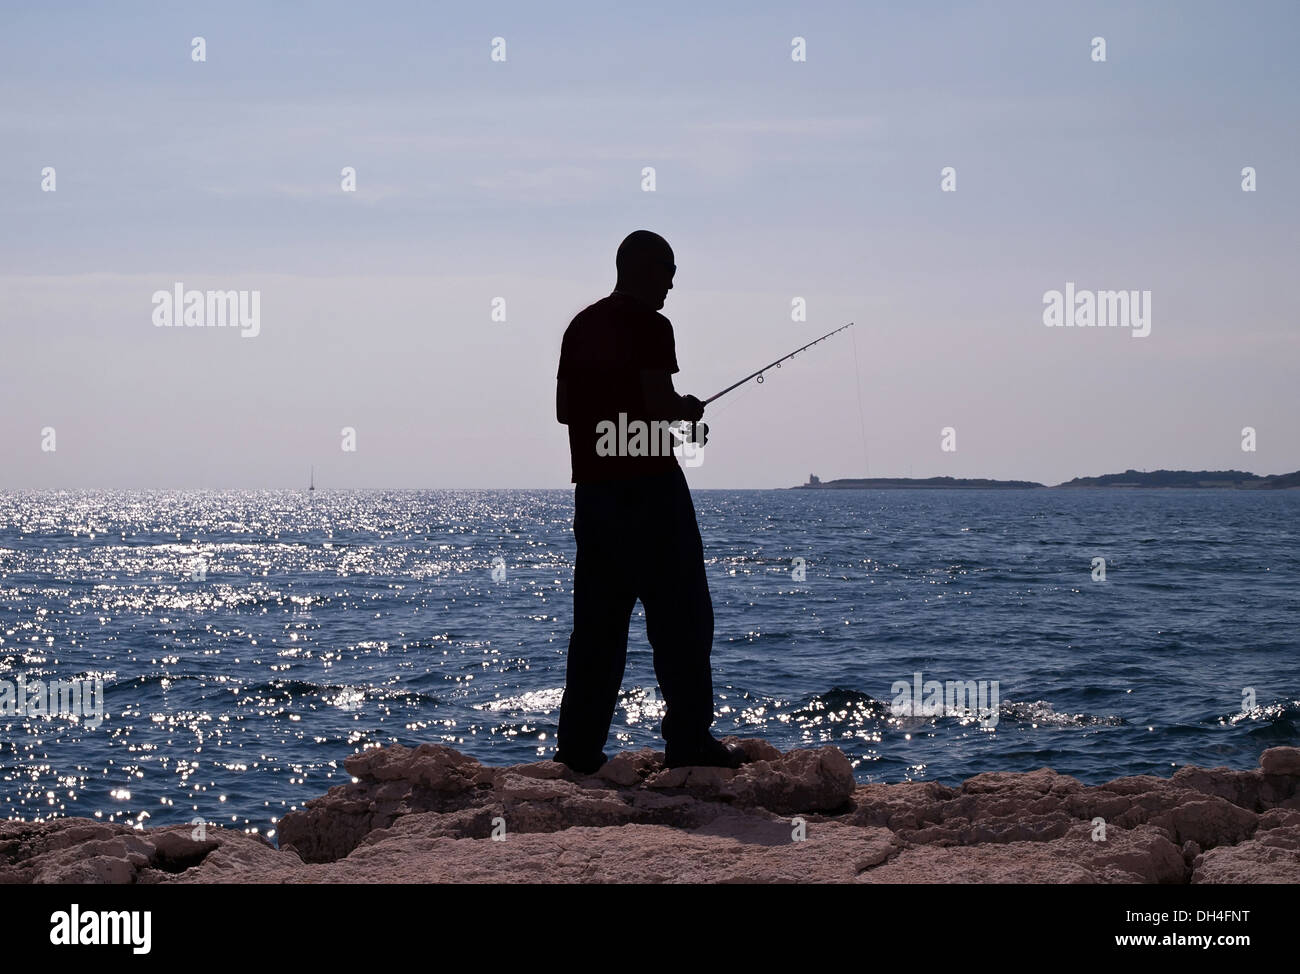 Pêche à l'homme dans la mer - silhouette d'un pêcheur Banque D'Images